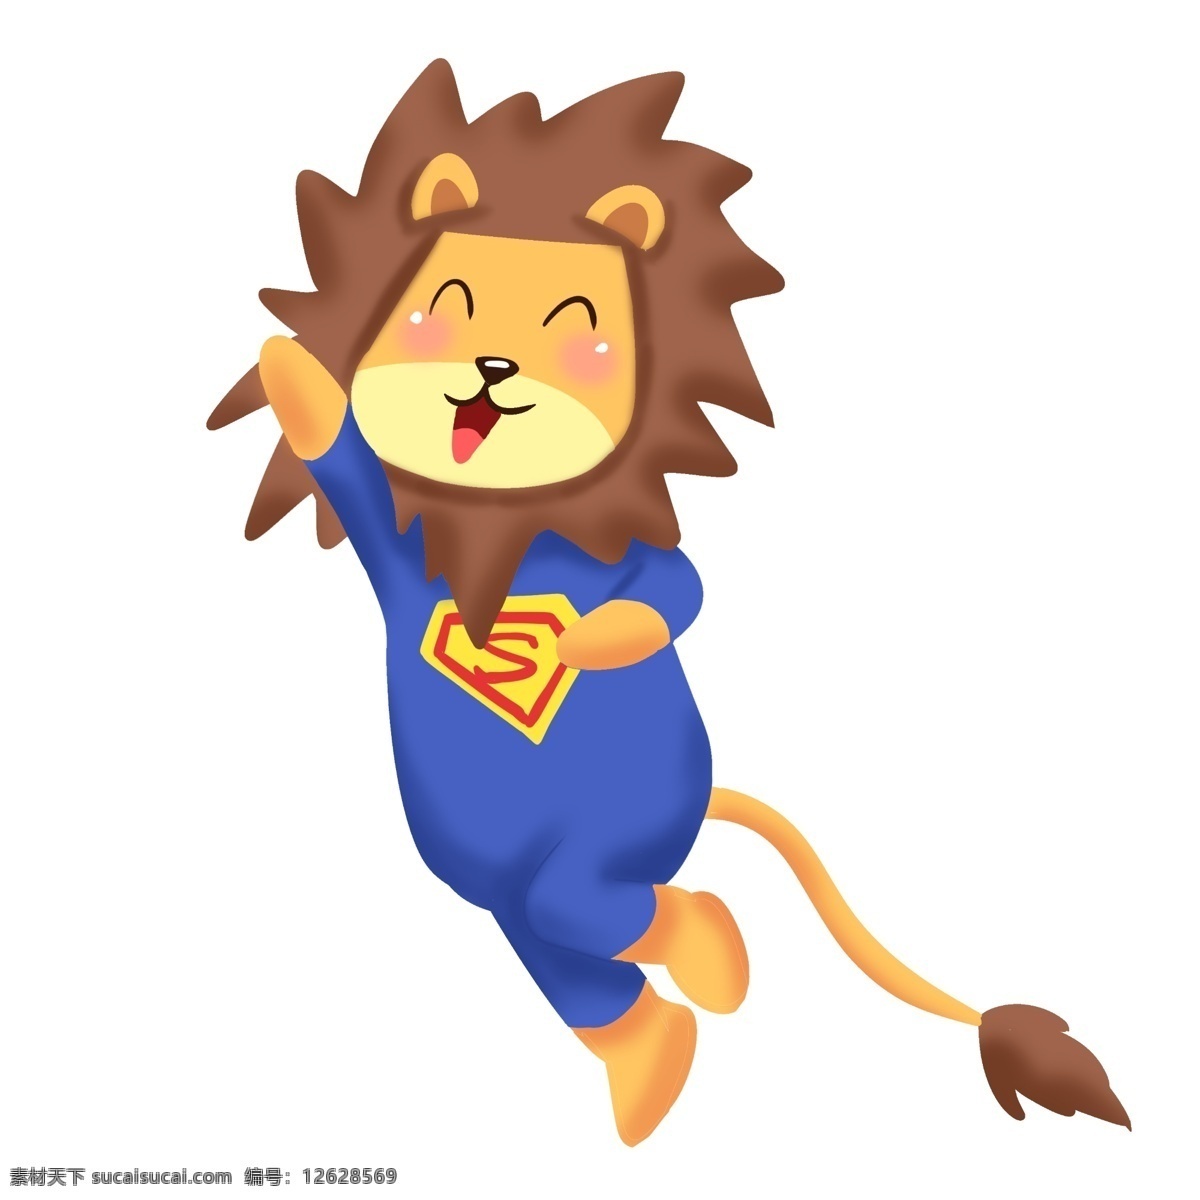 正在 跑步 运动 小 狮子 蓝色运动服 运动的狮子 卡通狮子 插画